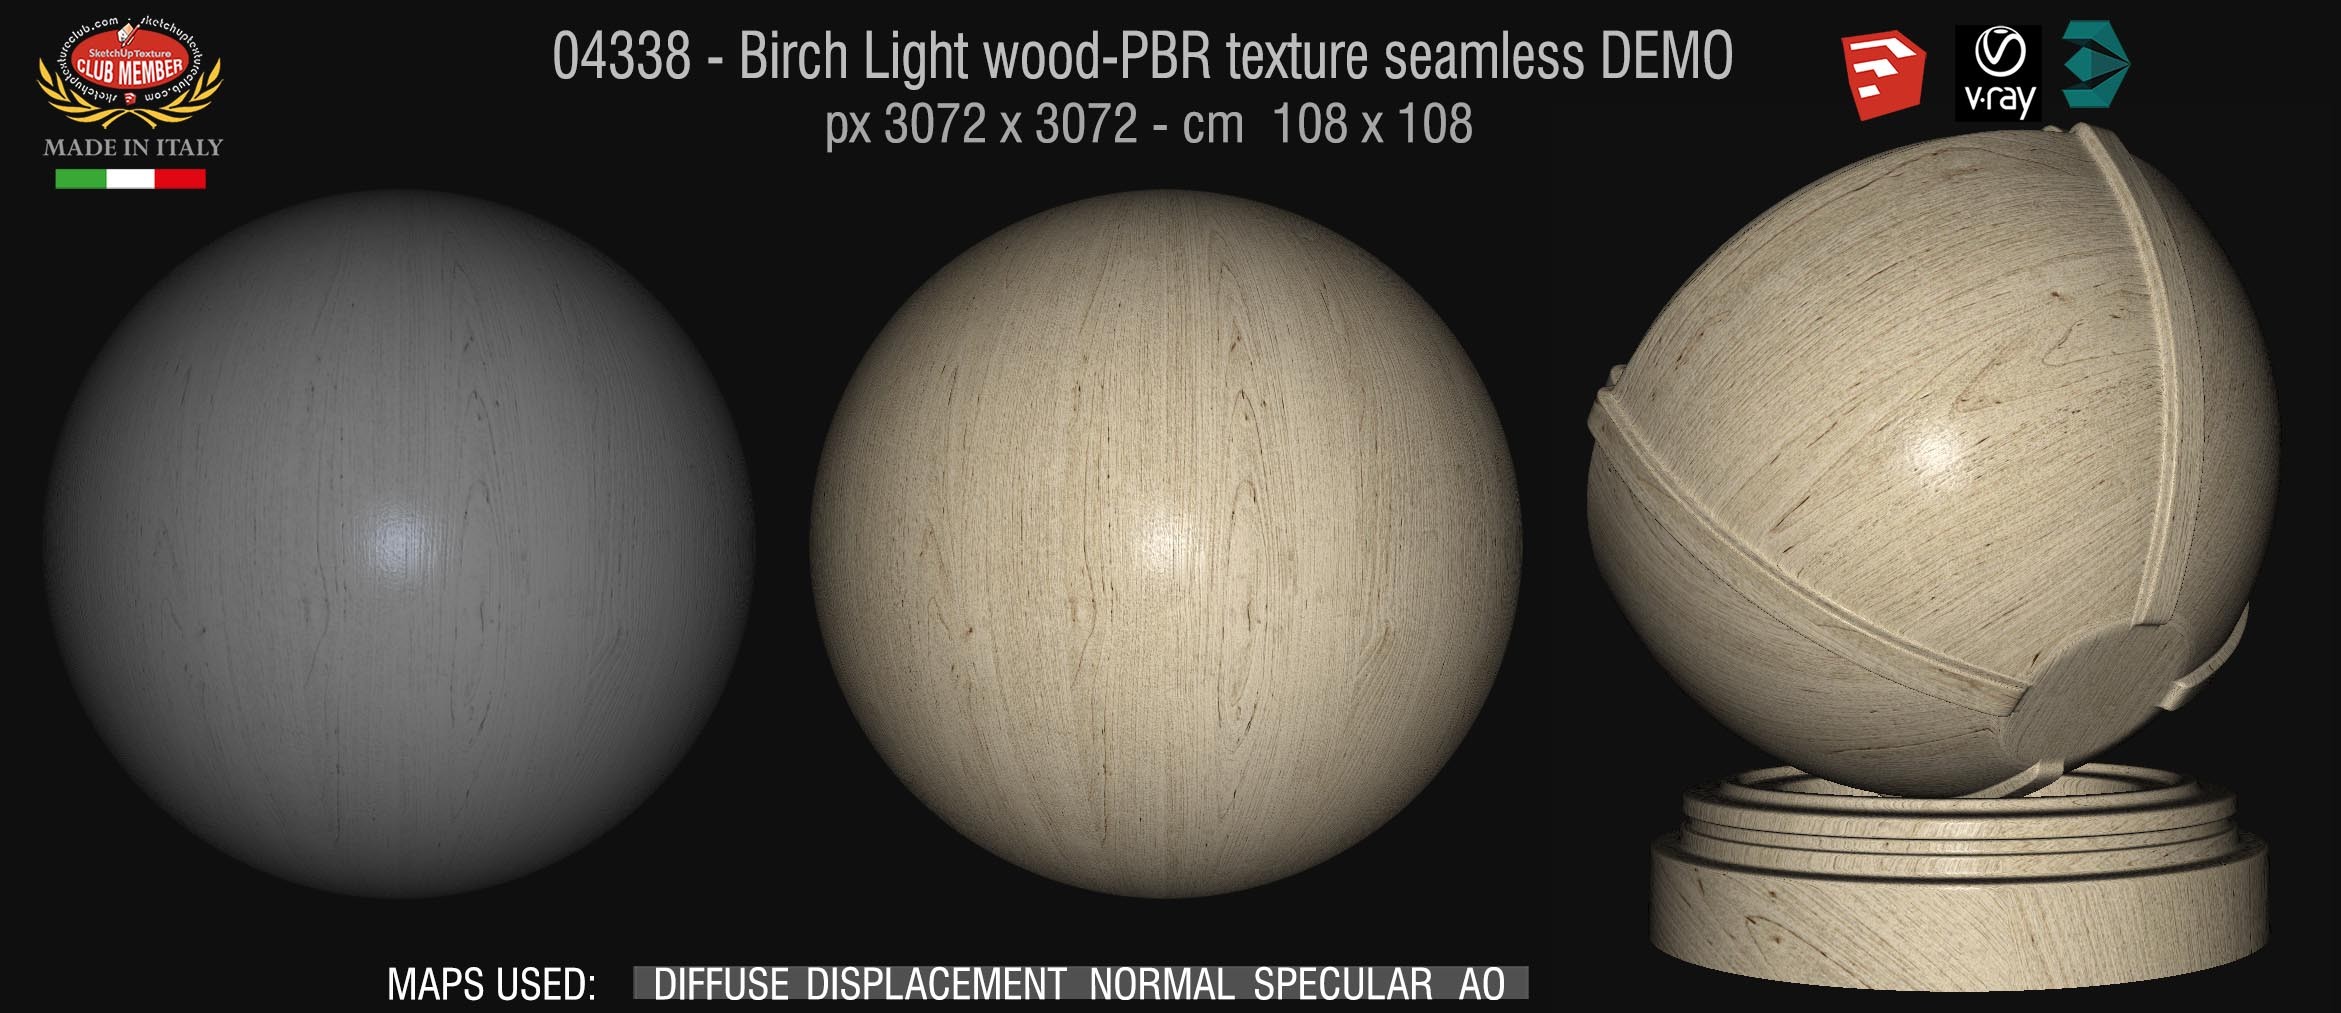 04338 Birch Light wood-PBR texture seamless DEMO